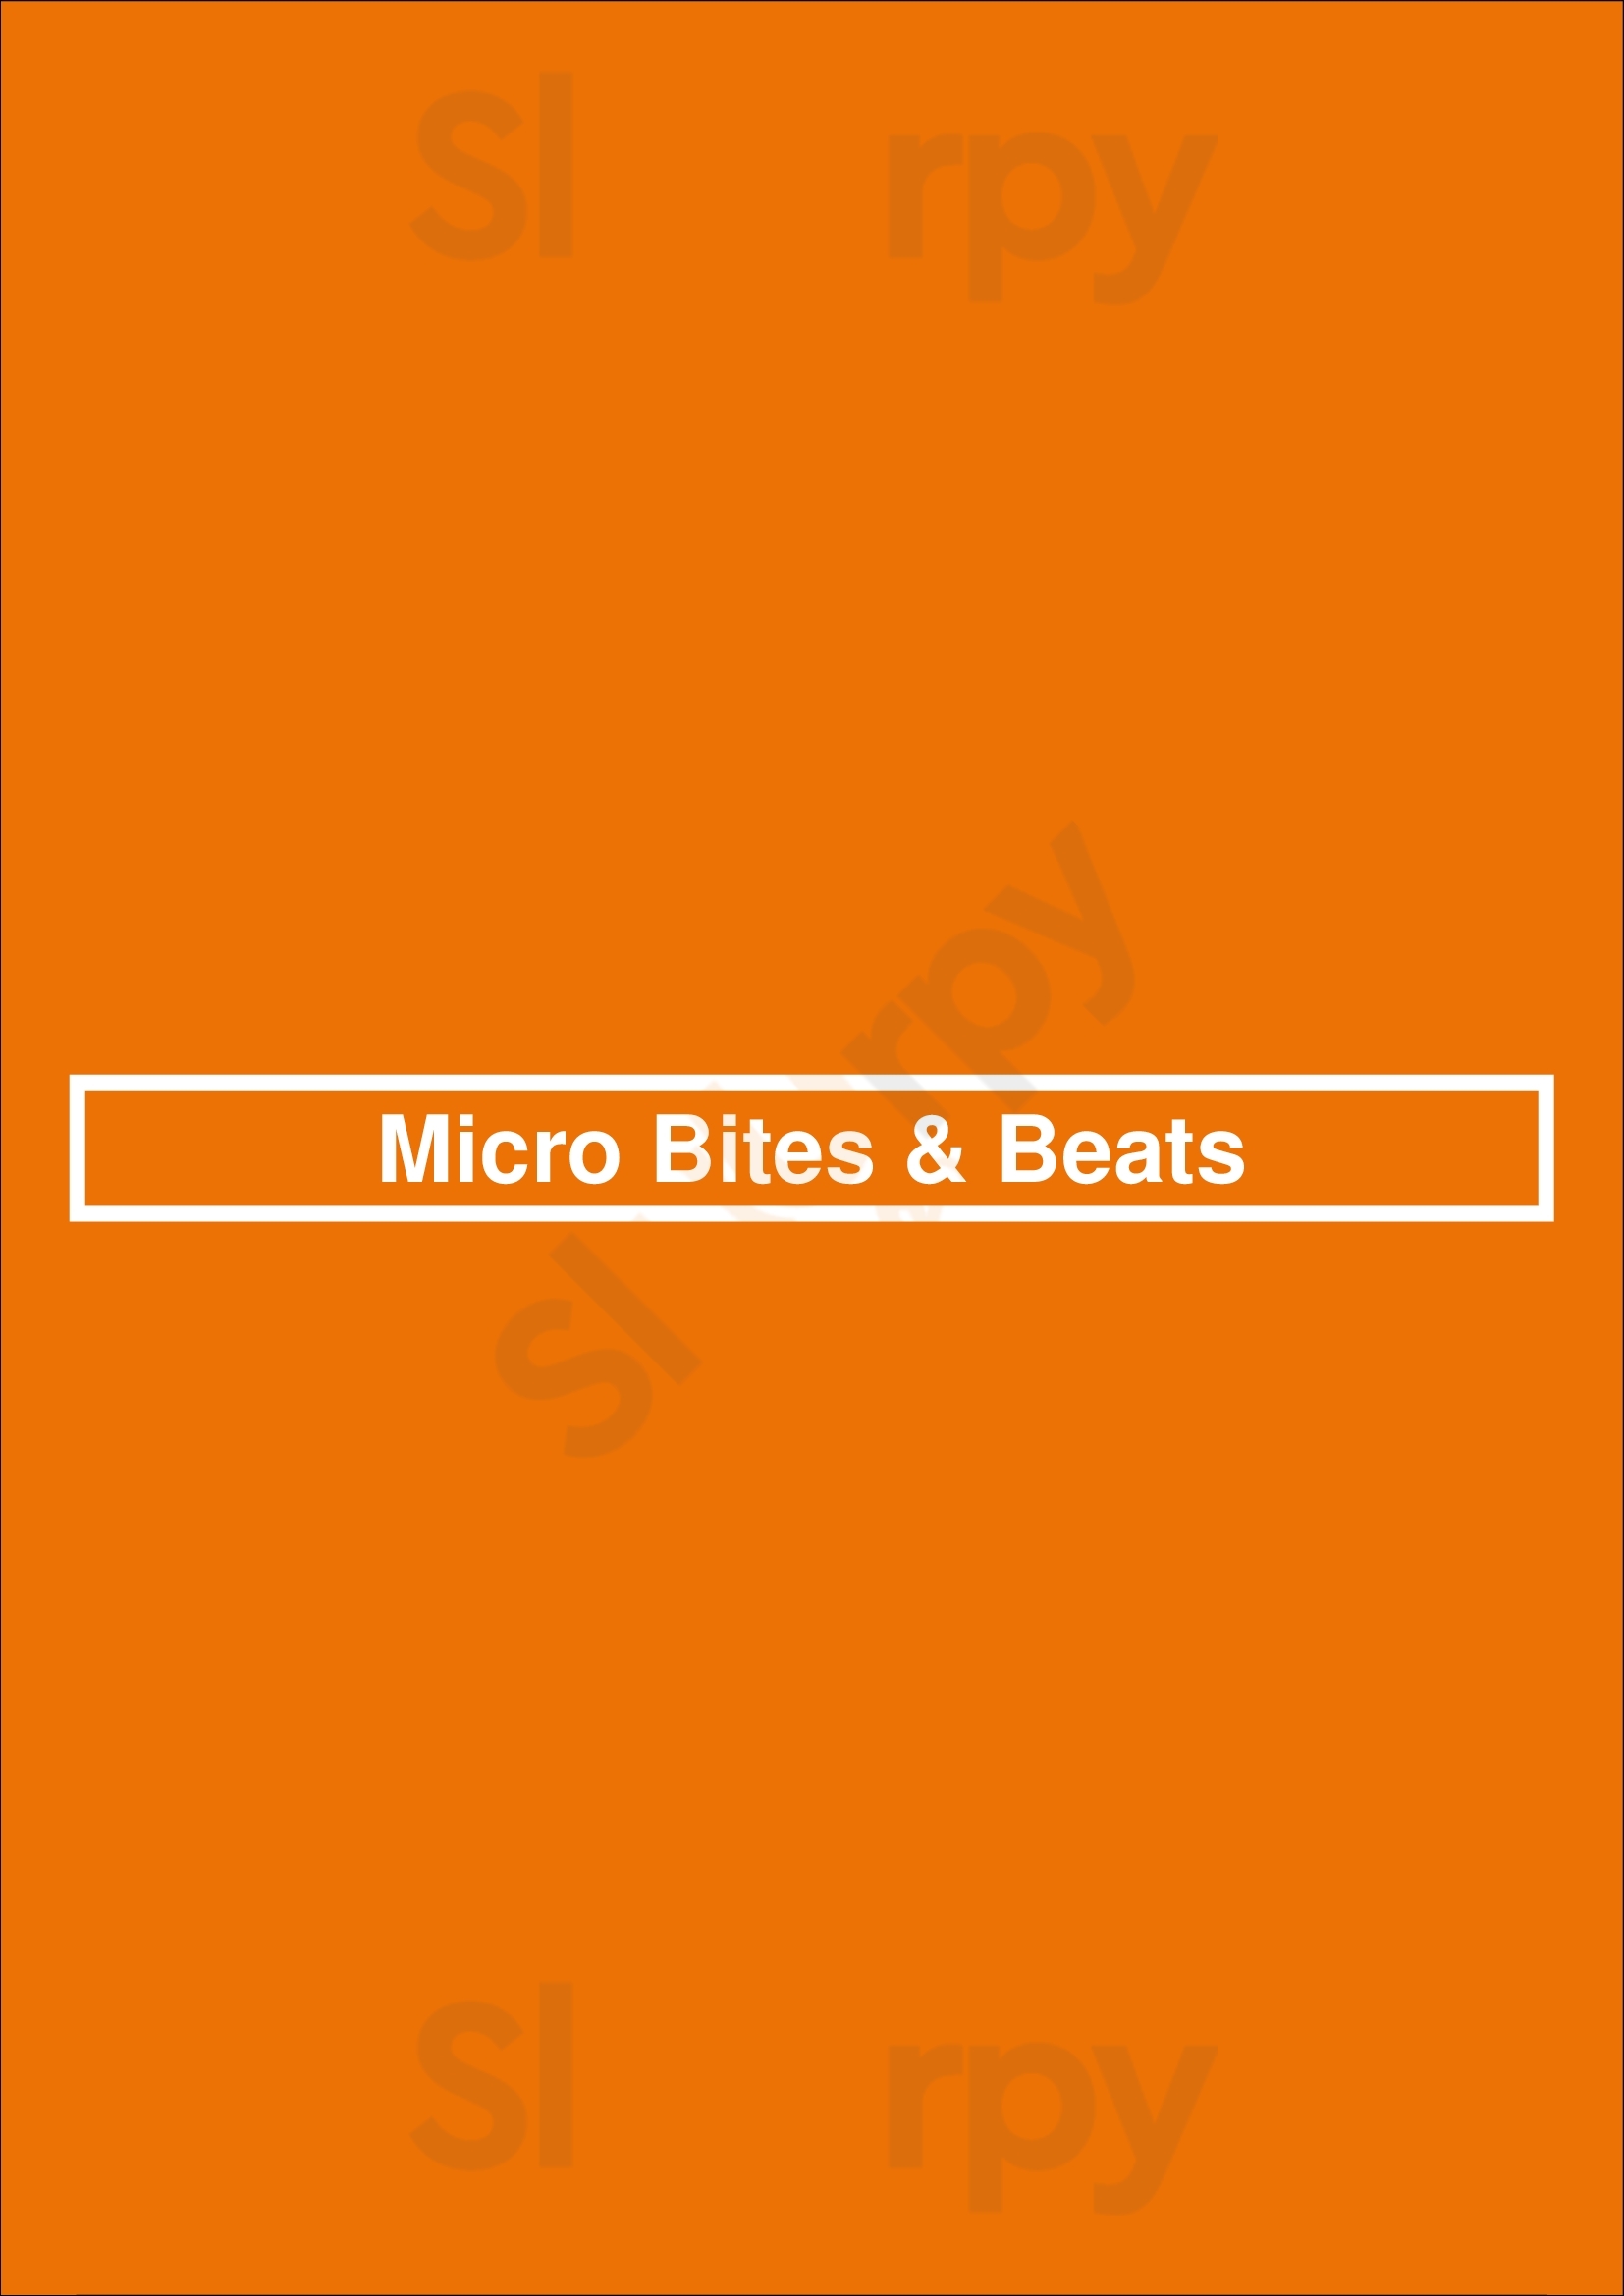 Micro Bites & Beats Lisboa Menu - 1